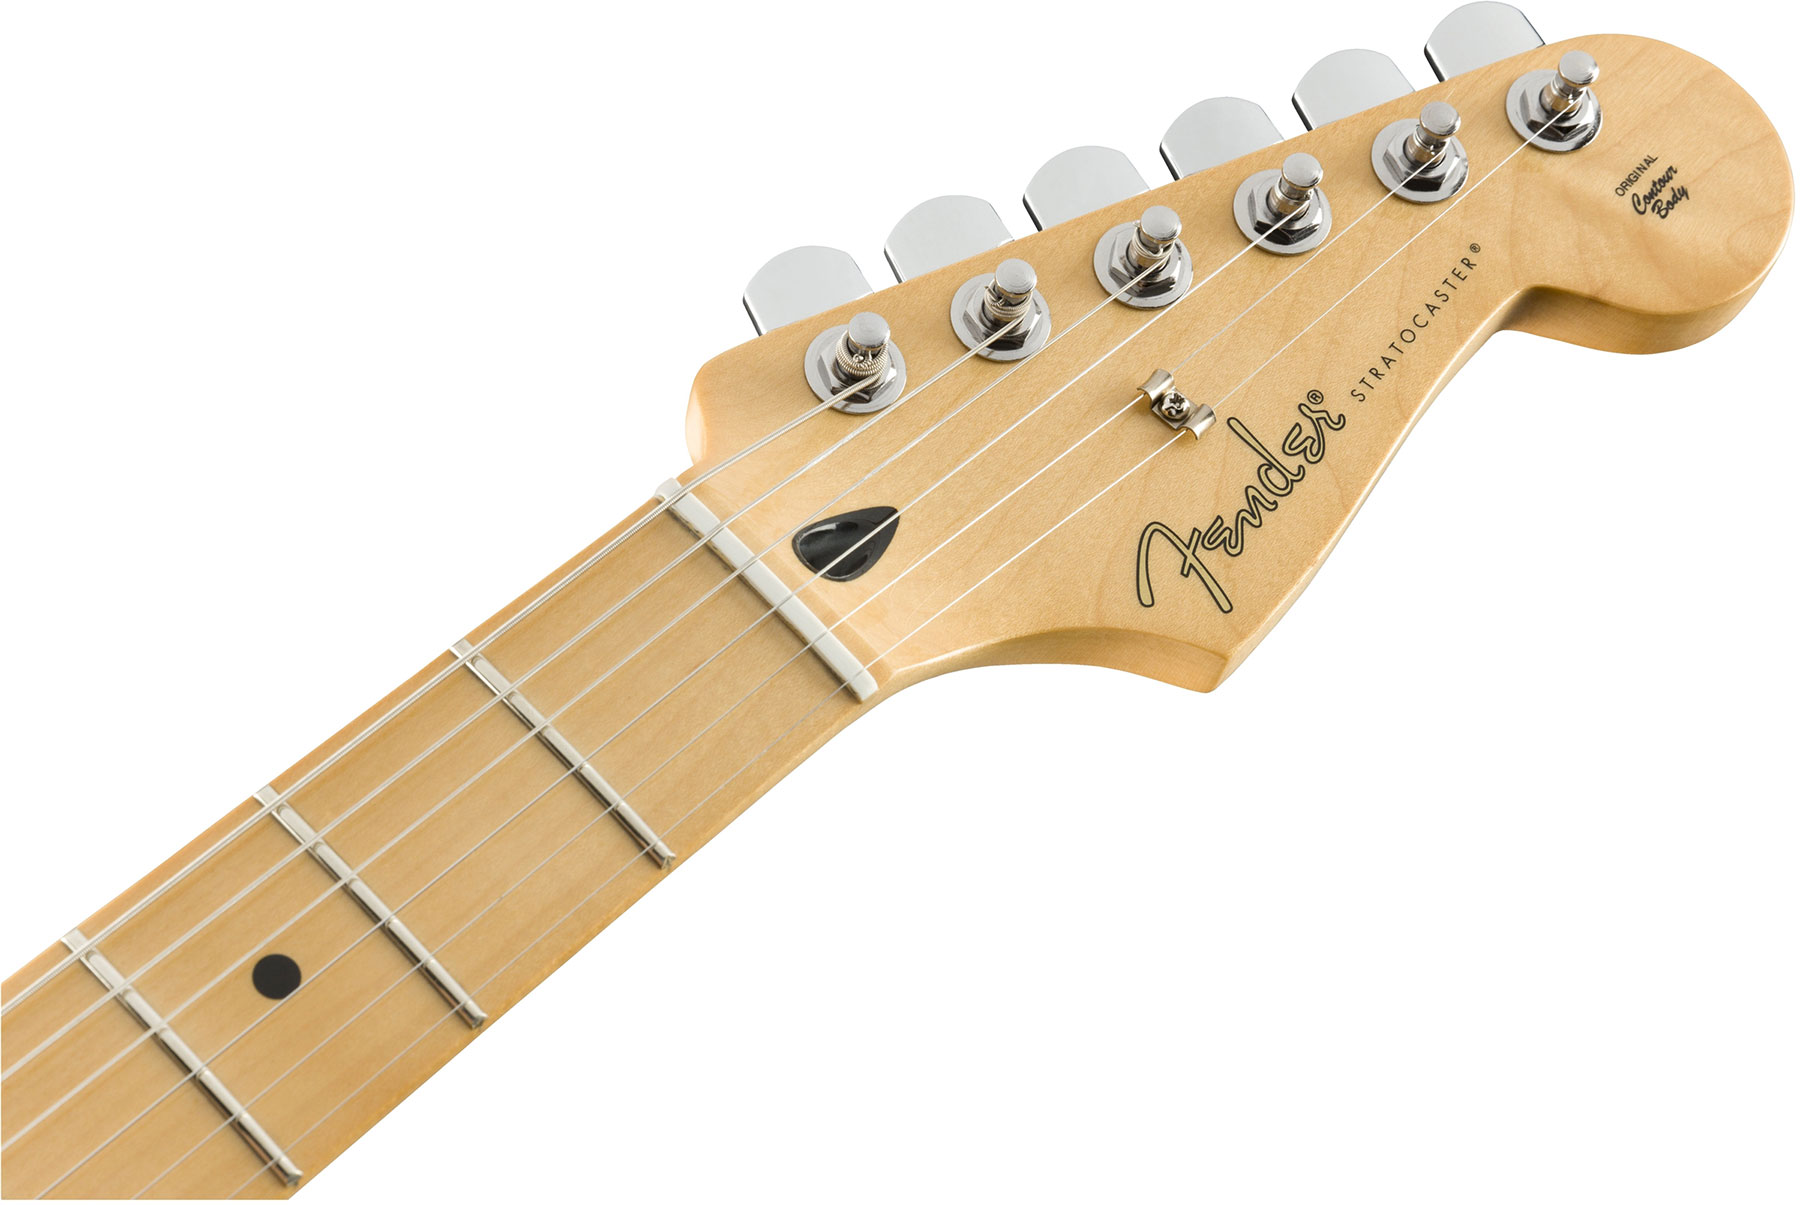 Fender Strat Player Hss Plus Top Fsr Ltd 2019 Mex Mn - Sienna Sunburst - Guitarra eléctrica con forma de str. - Variation 1